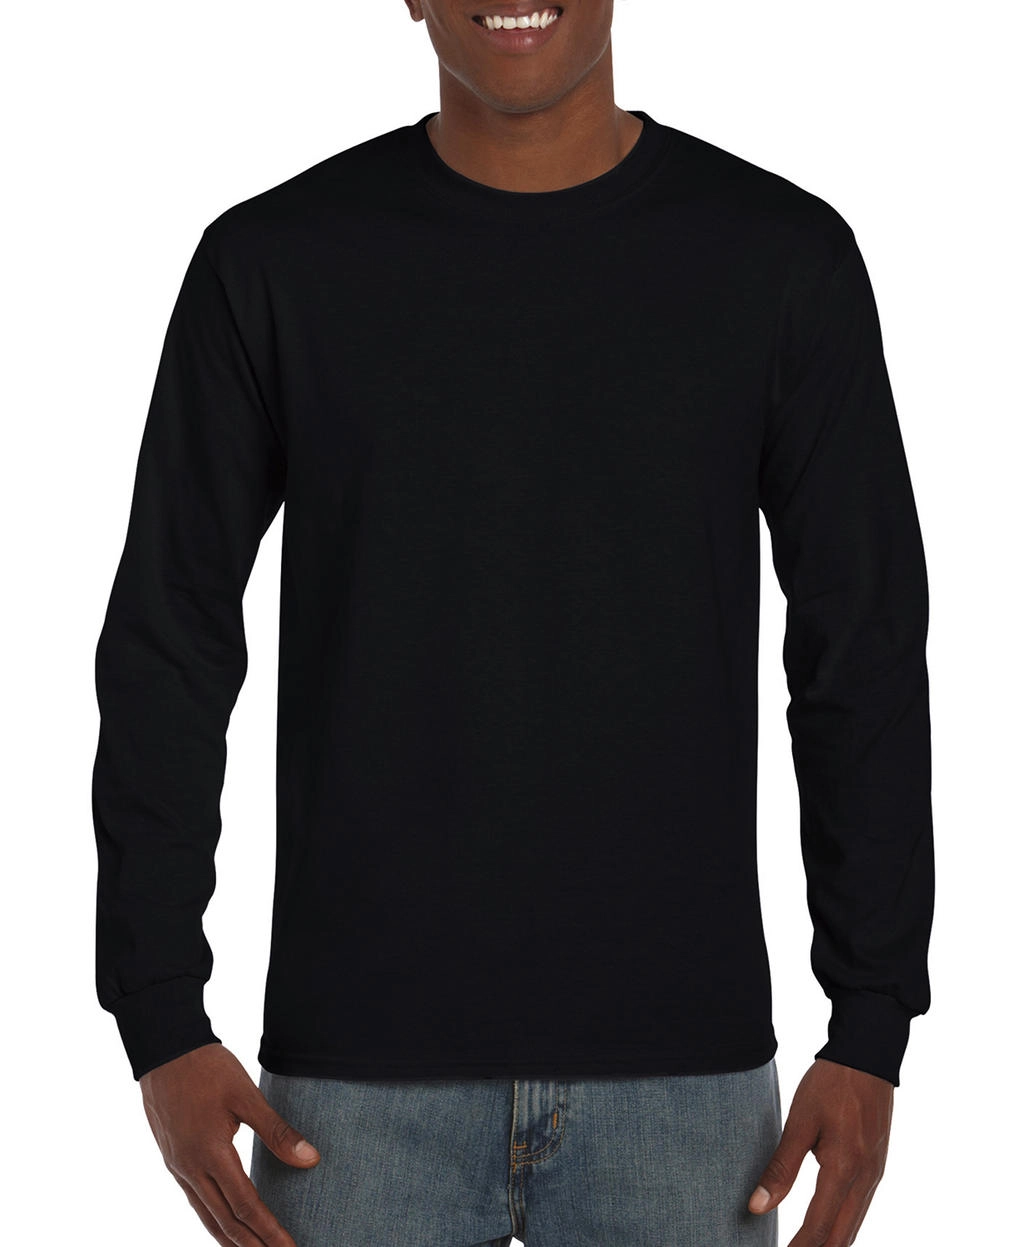 Hammer™ Adult Long Sleeve T-Shirt zum Besticken und Bedrucken in der Farbe Black mit Ihren Logo, Schriftzug oder Motiv.